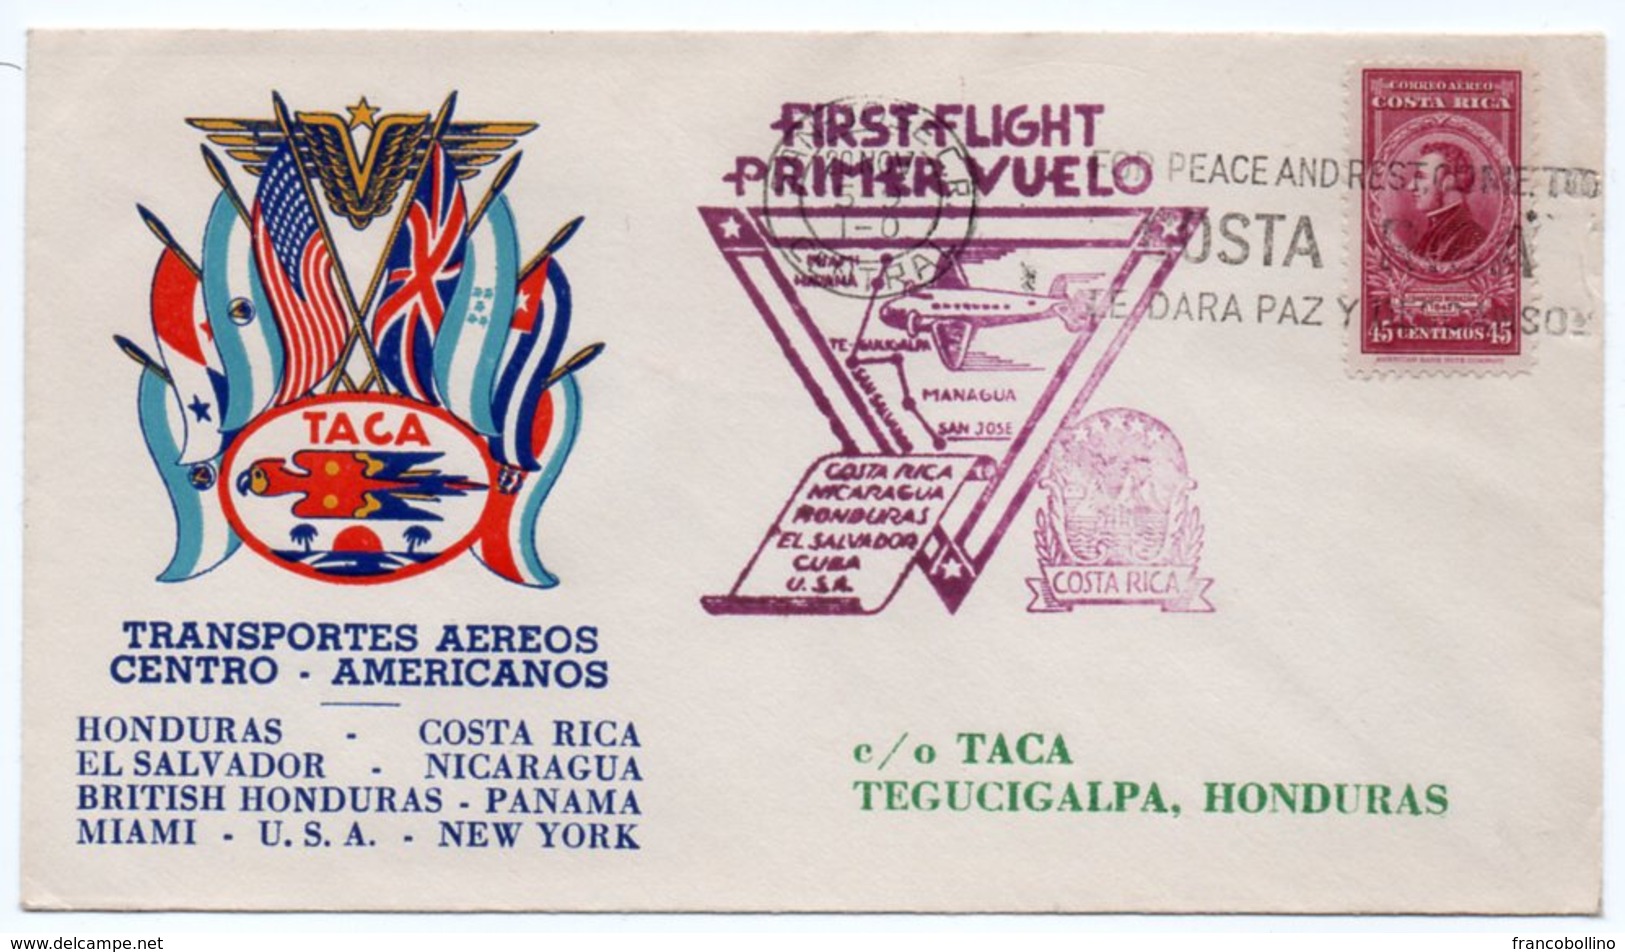 TACA / FIRST FLIGHT SAN JOSE' COSTA RICA/TEGUCIGALPA HONDURAS - 1943 - Aerei